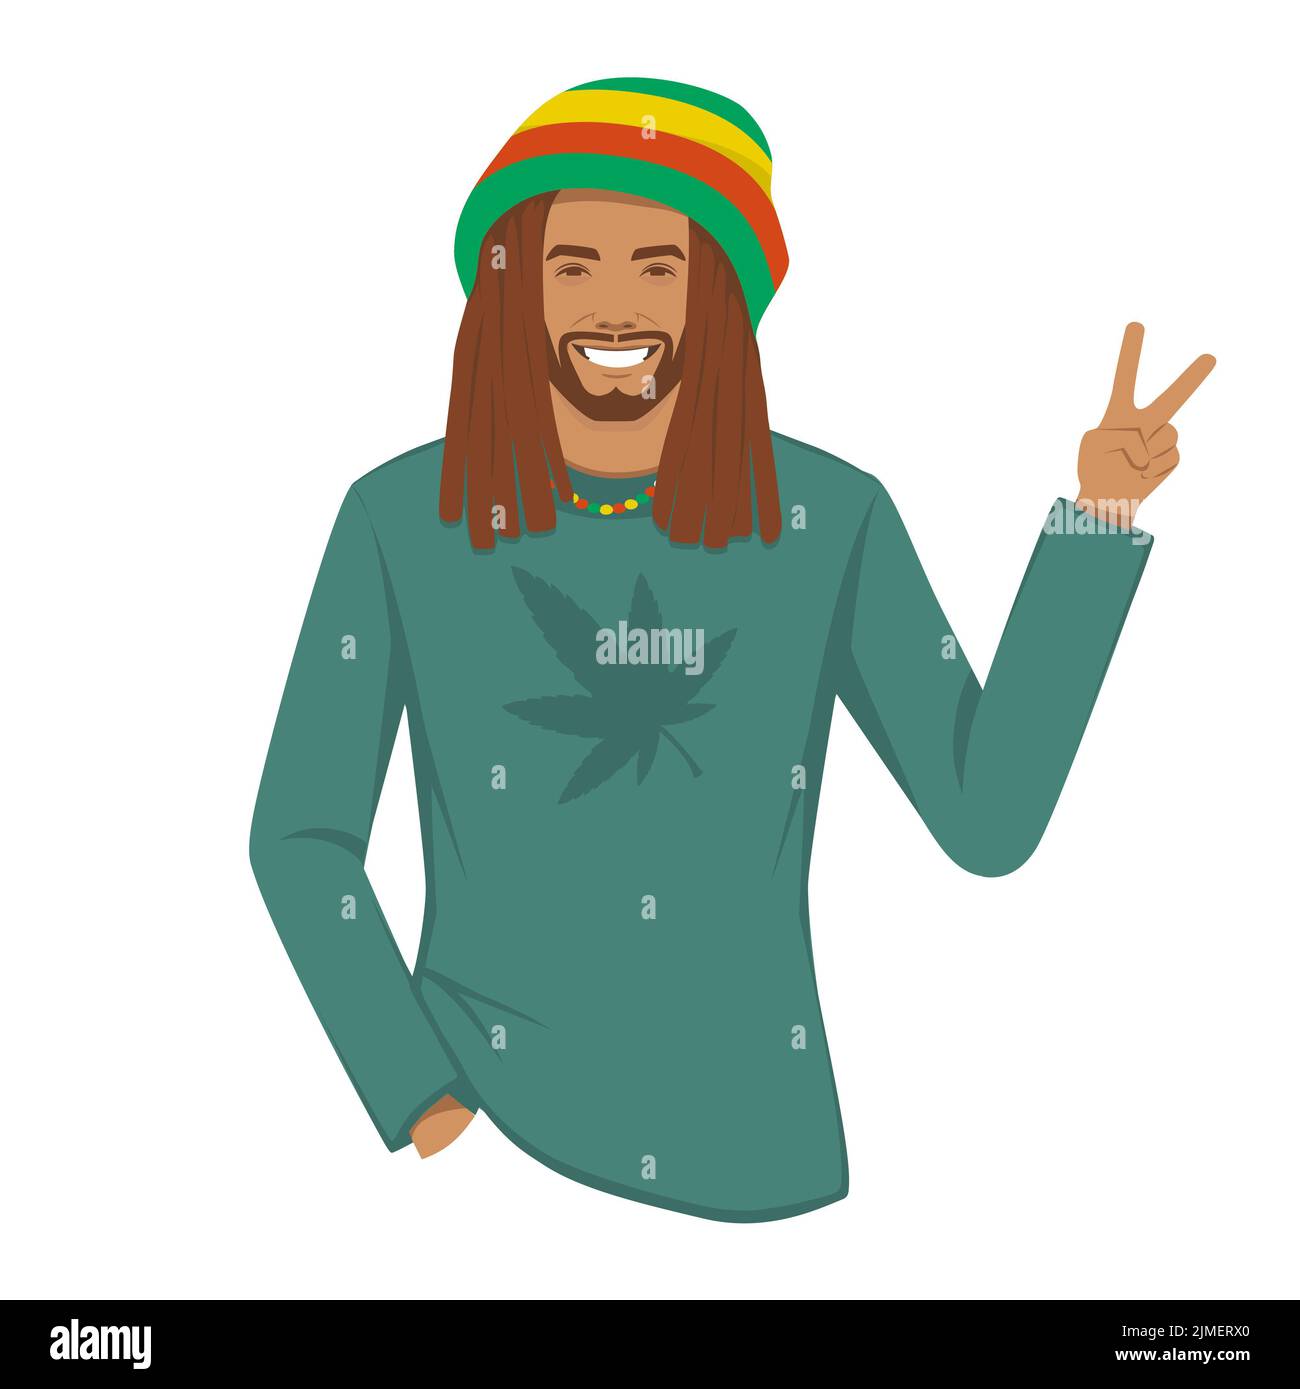 caricature rastafarian avec dreadlocks, musique rasta de jamaïque. caractère heureux isolé.Illustration vectorielle. Banque D'Images